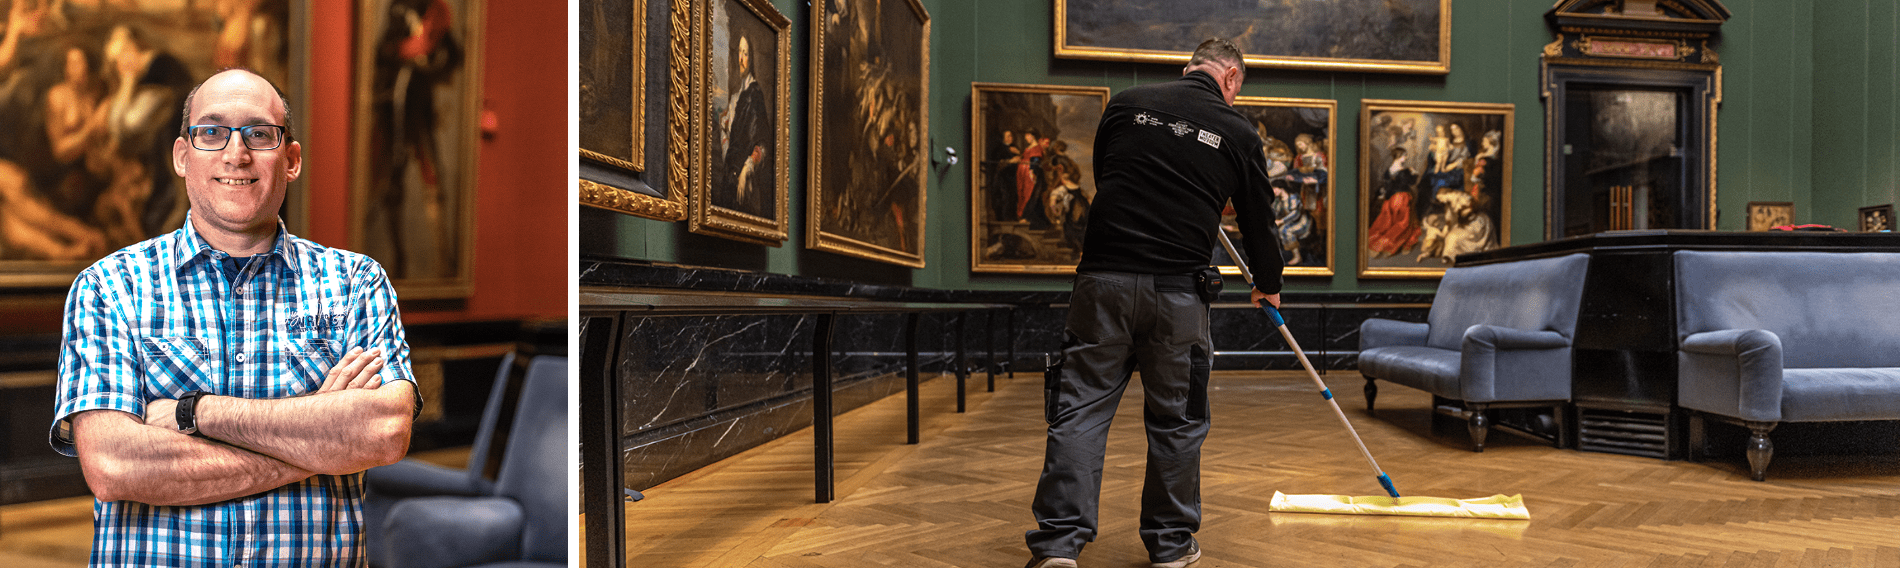 Le nettoyage du sol au Kunsthistorisches Museum de Vienne (Interview)